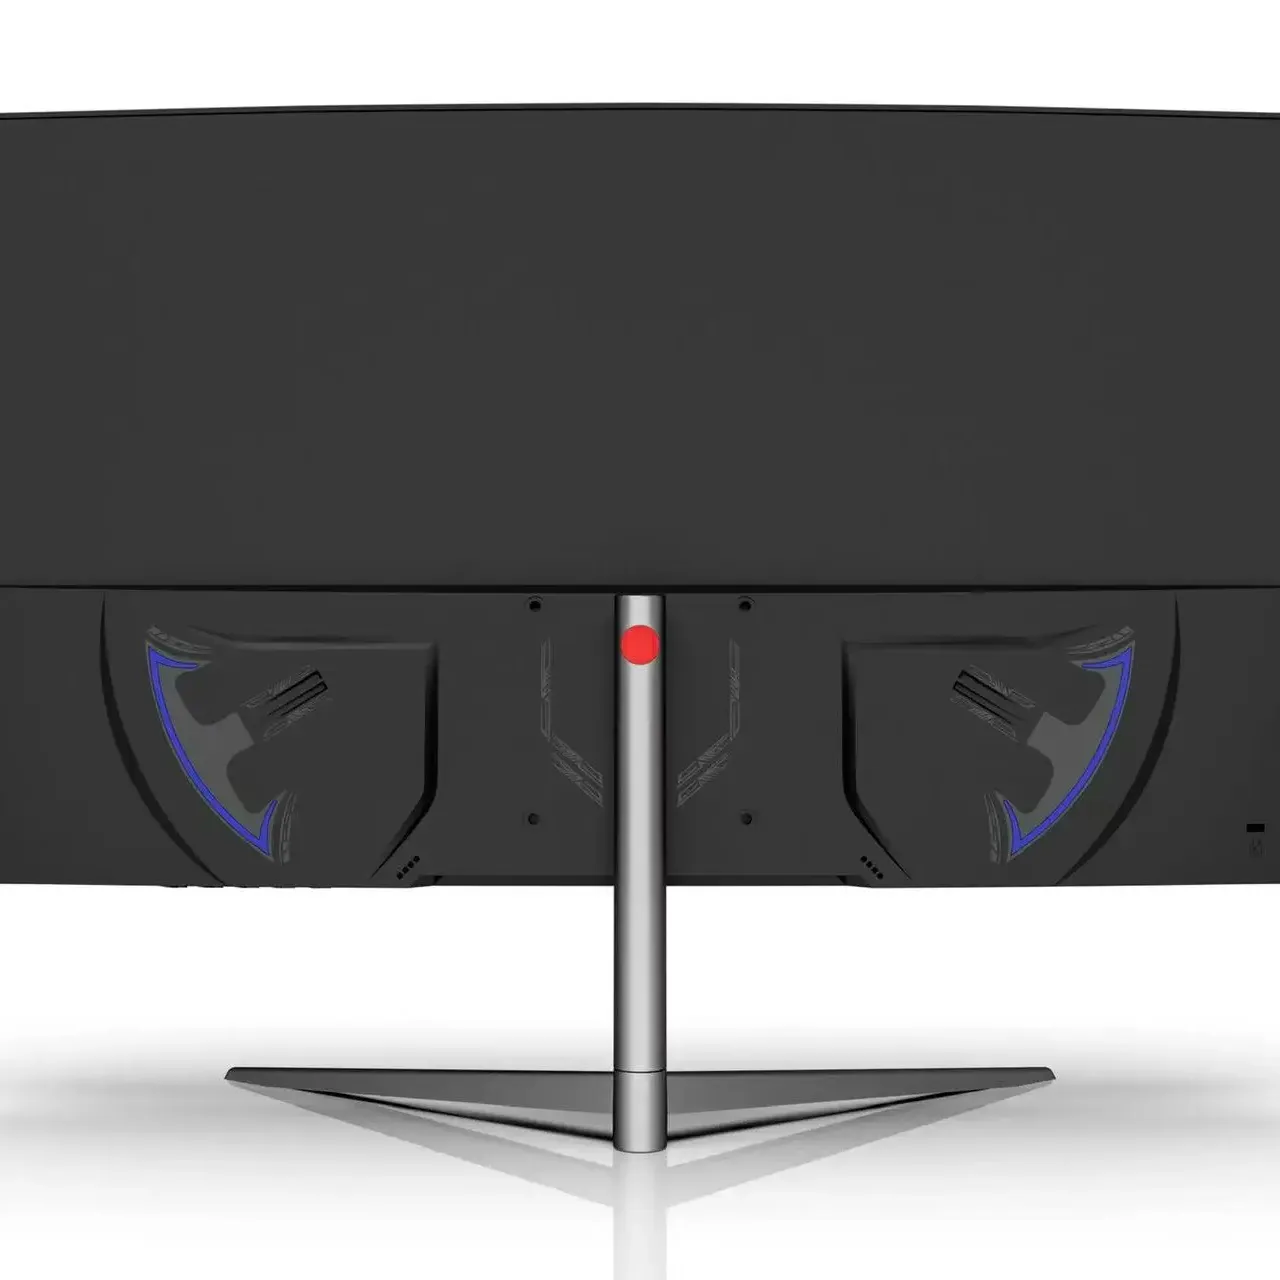 شاشات عرض للألعاب 24 بوصة وبدقة 144 هرتز وعرض عالي الوضوح 1920×1080 بكسل HDMI شاشة منحنية LCD لأجهزة الكمبيوتر الشخصية والألعاب